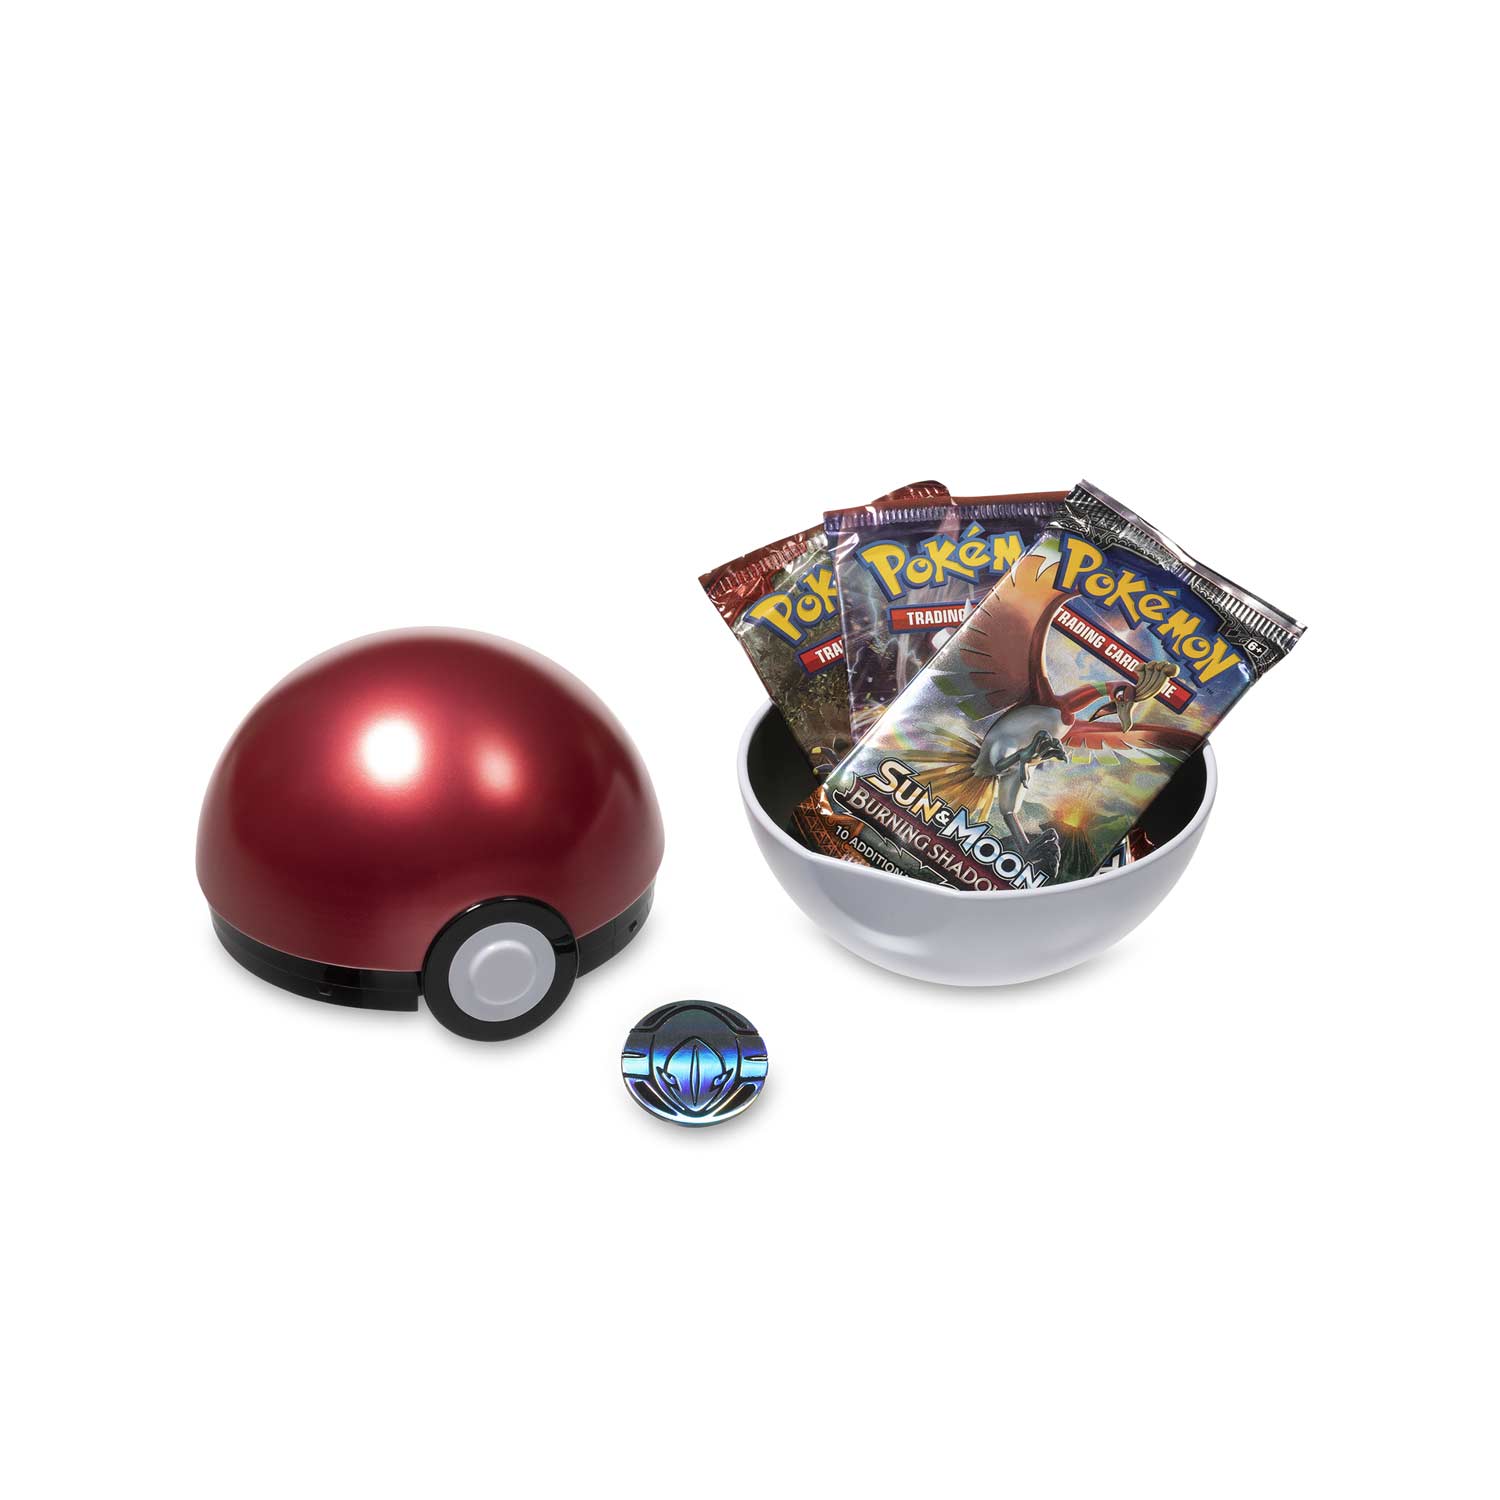 Pokemon TCG 2020 Spring Poke Ball Single Tin